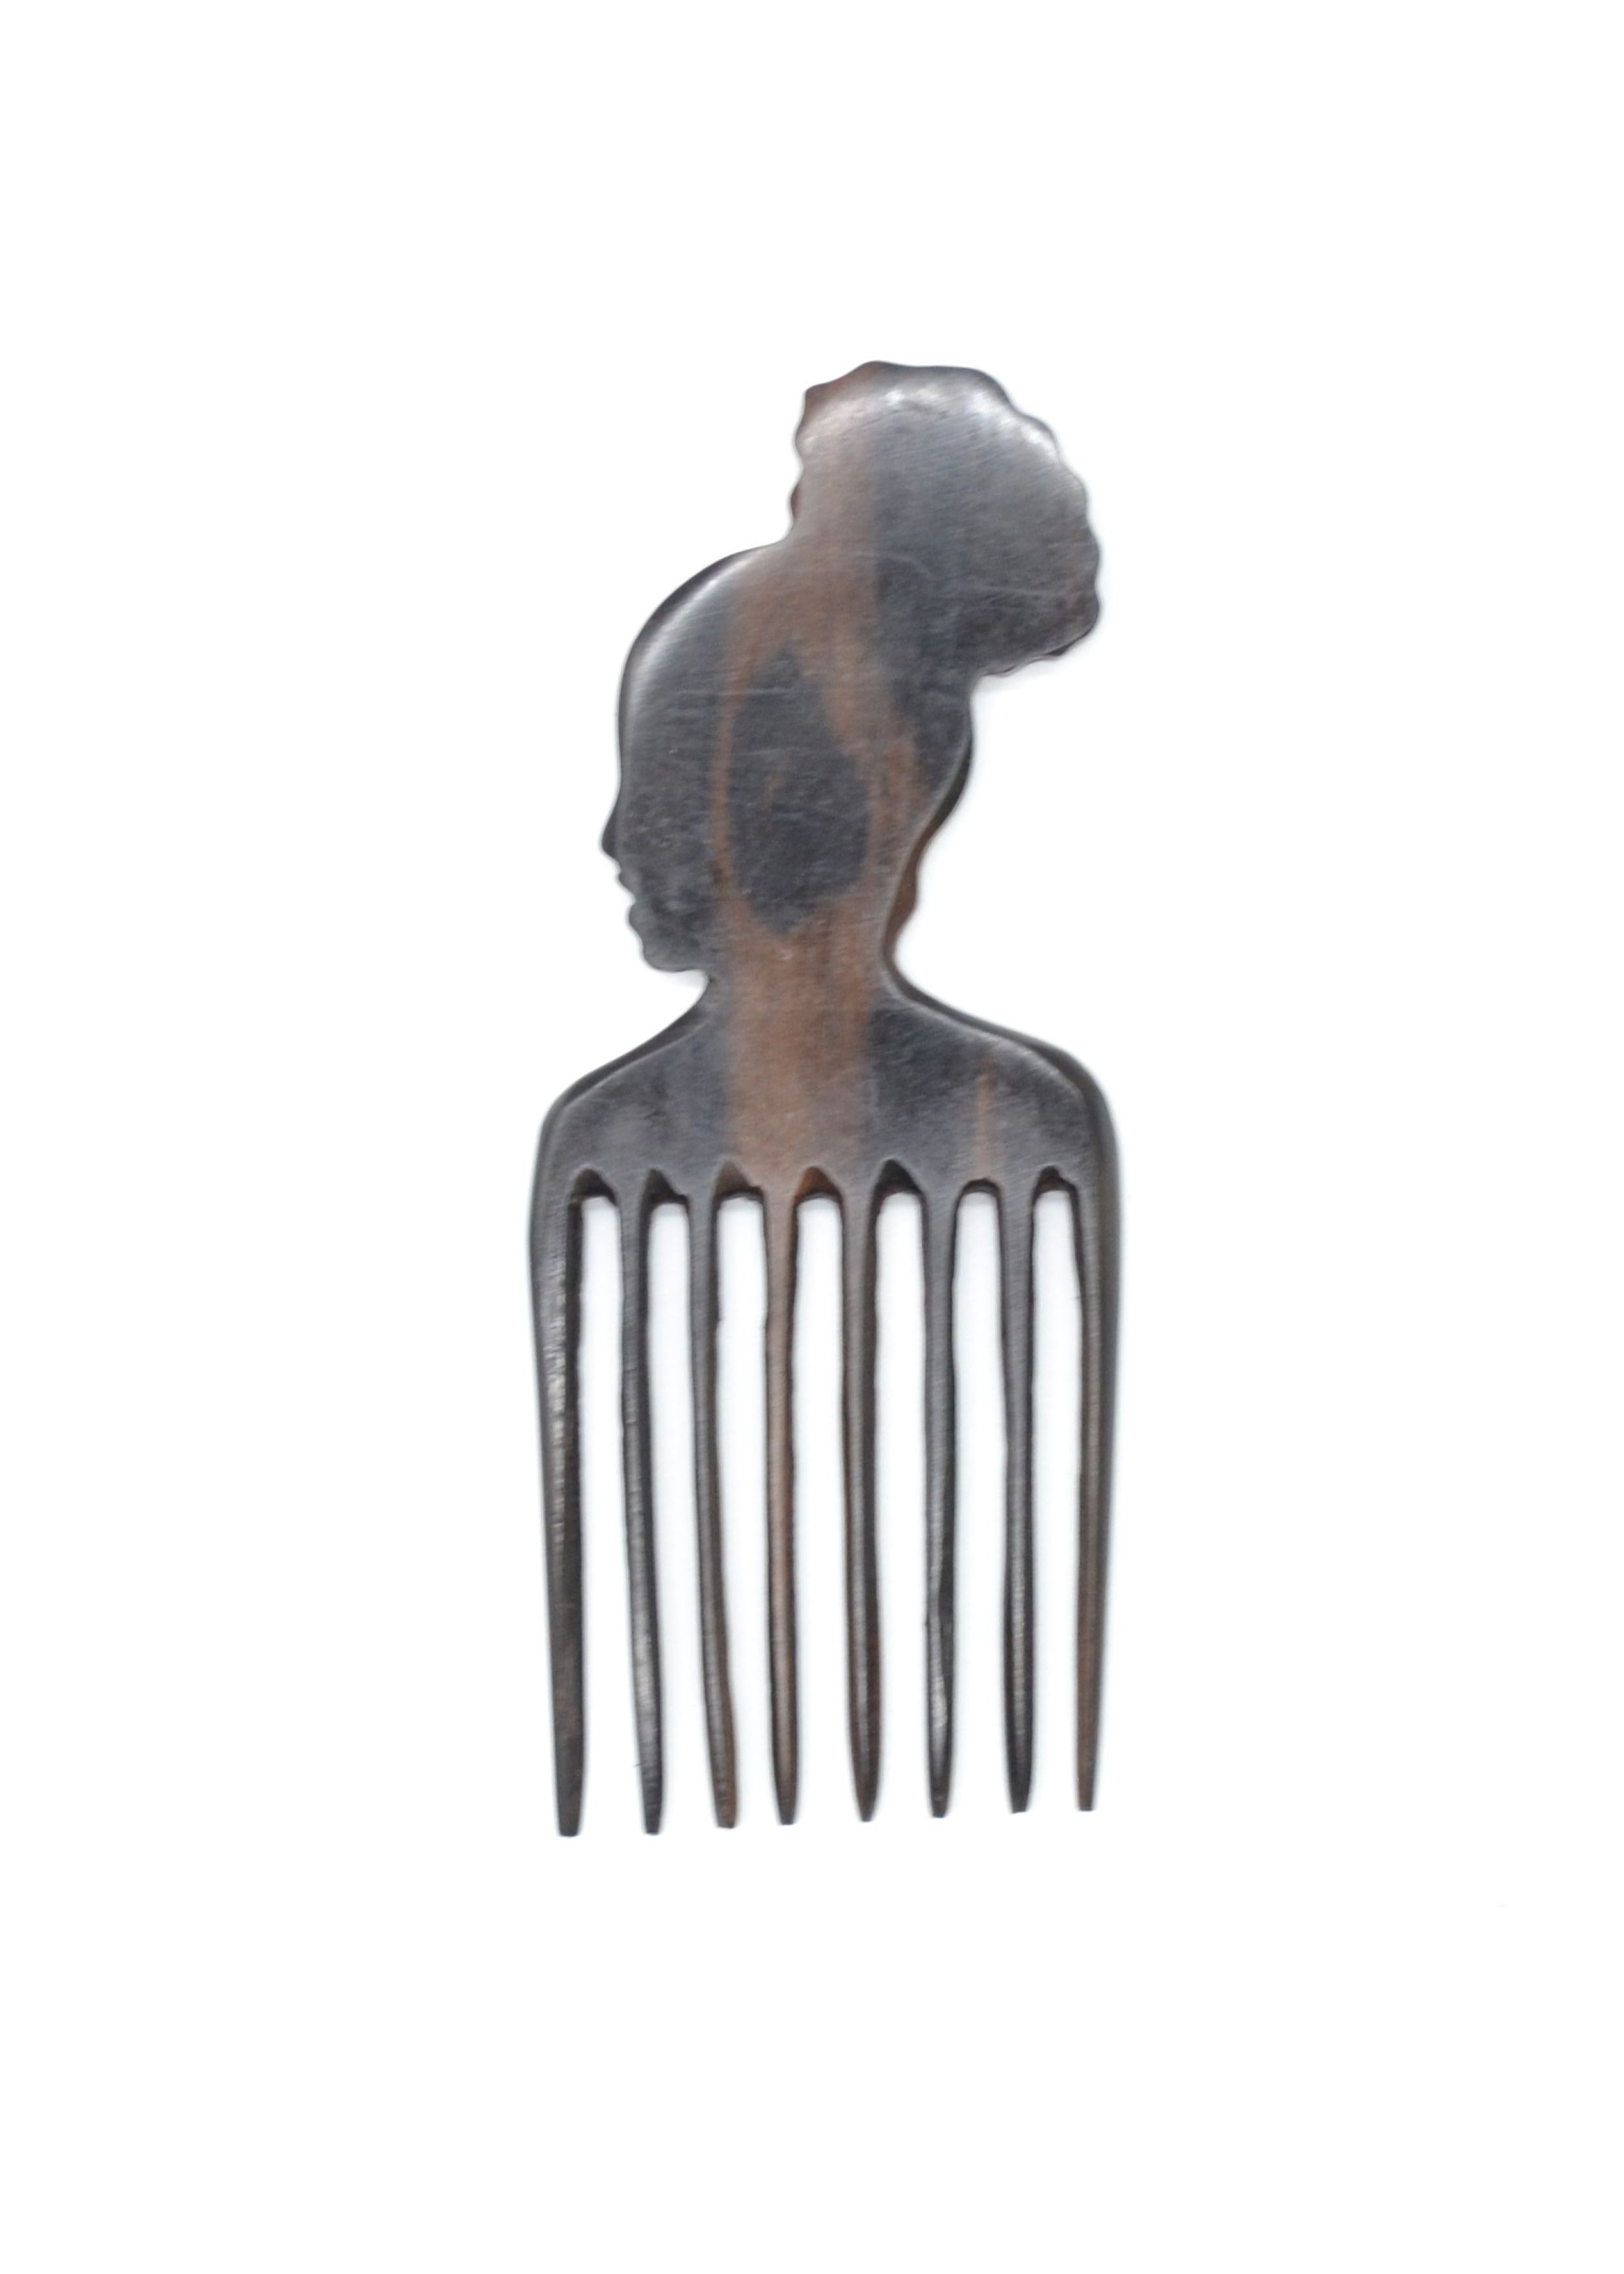 Peigne Afro - La Boutique du barber - La Réunion, peigne afro